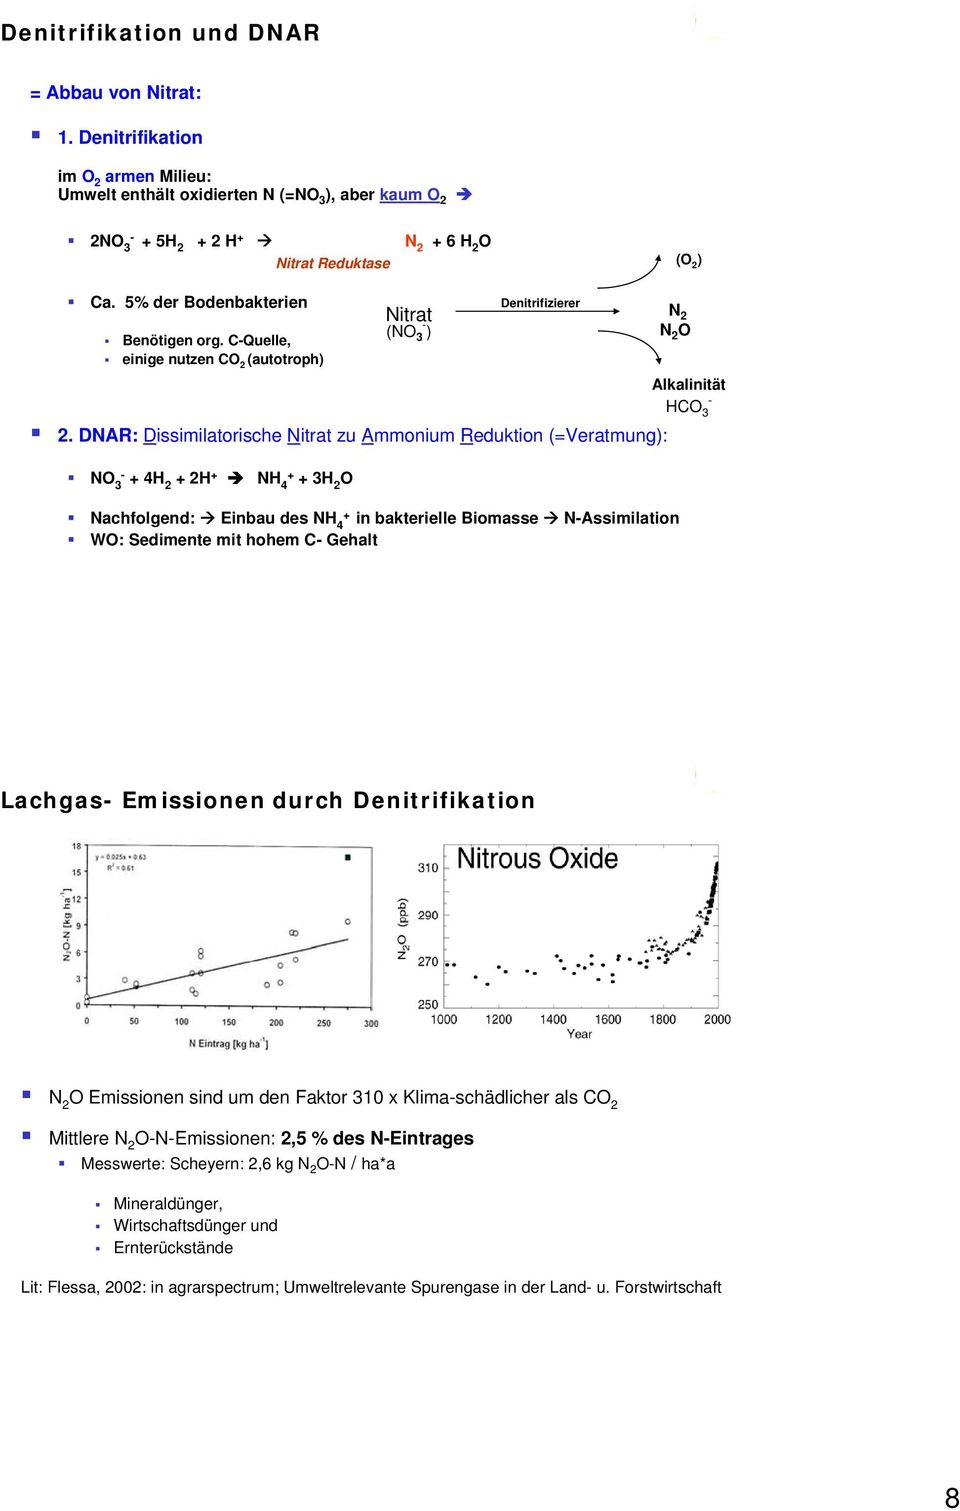 DNAR: Dissimilatorische Nitrat zu Ammonium Reduktion (=Veratmung): N 3 4H 2 2H NH 4 3H 2 Nitrat (N 3 ) Denitrifizierer Nachfolgend: Einbau des NH 4 in bakterielle Biomasse NAssimilation W: Sedimente